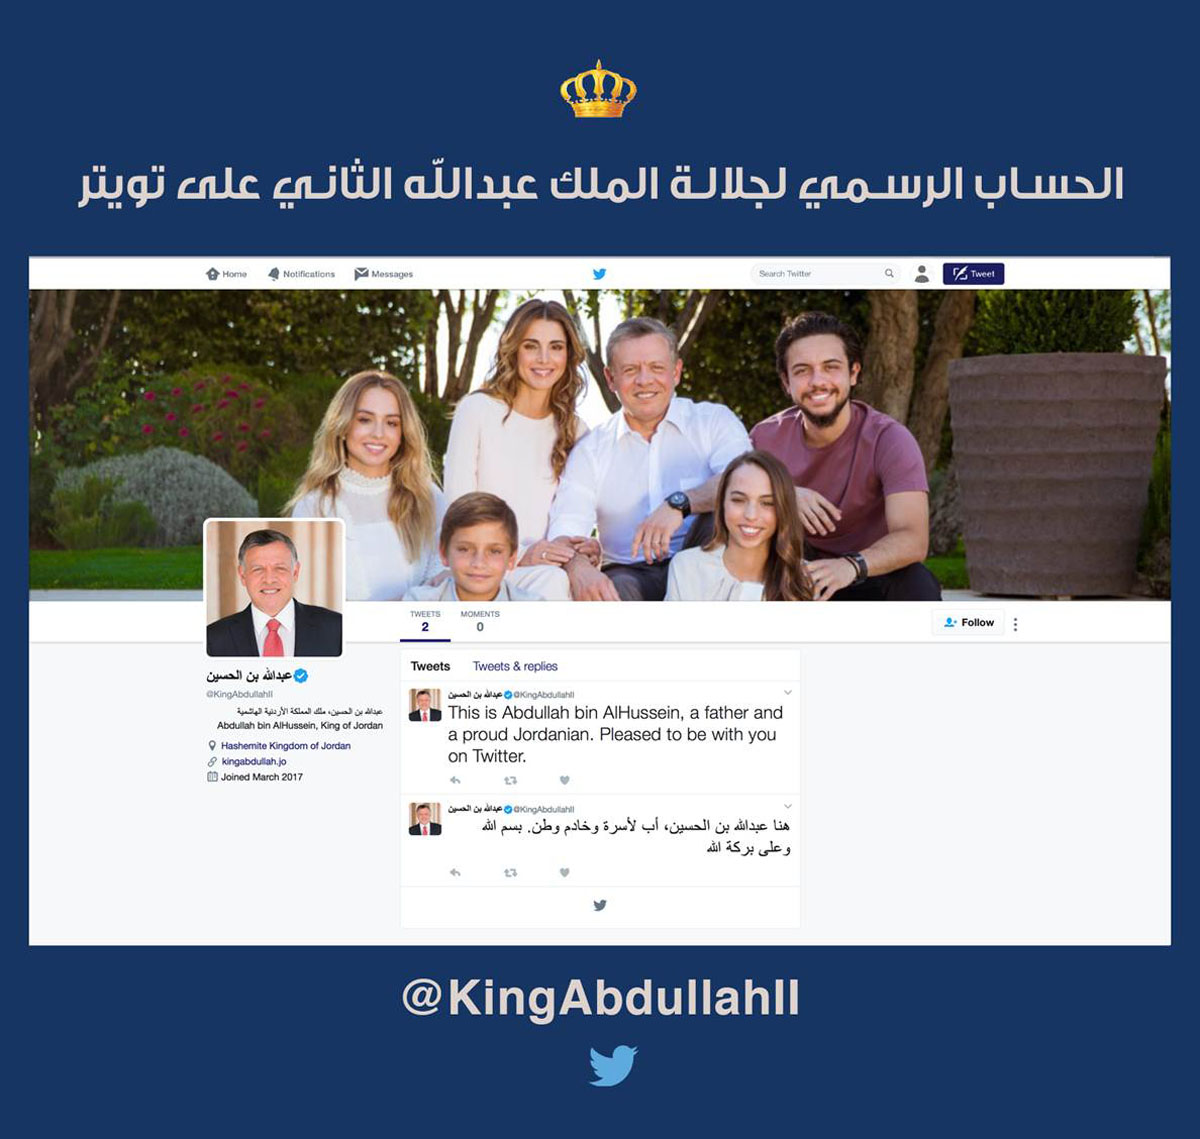 الملك يطلق حسابه الخاص على منصة التواصل الاجتماعي تويتر